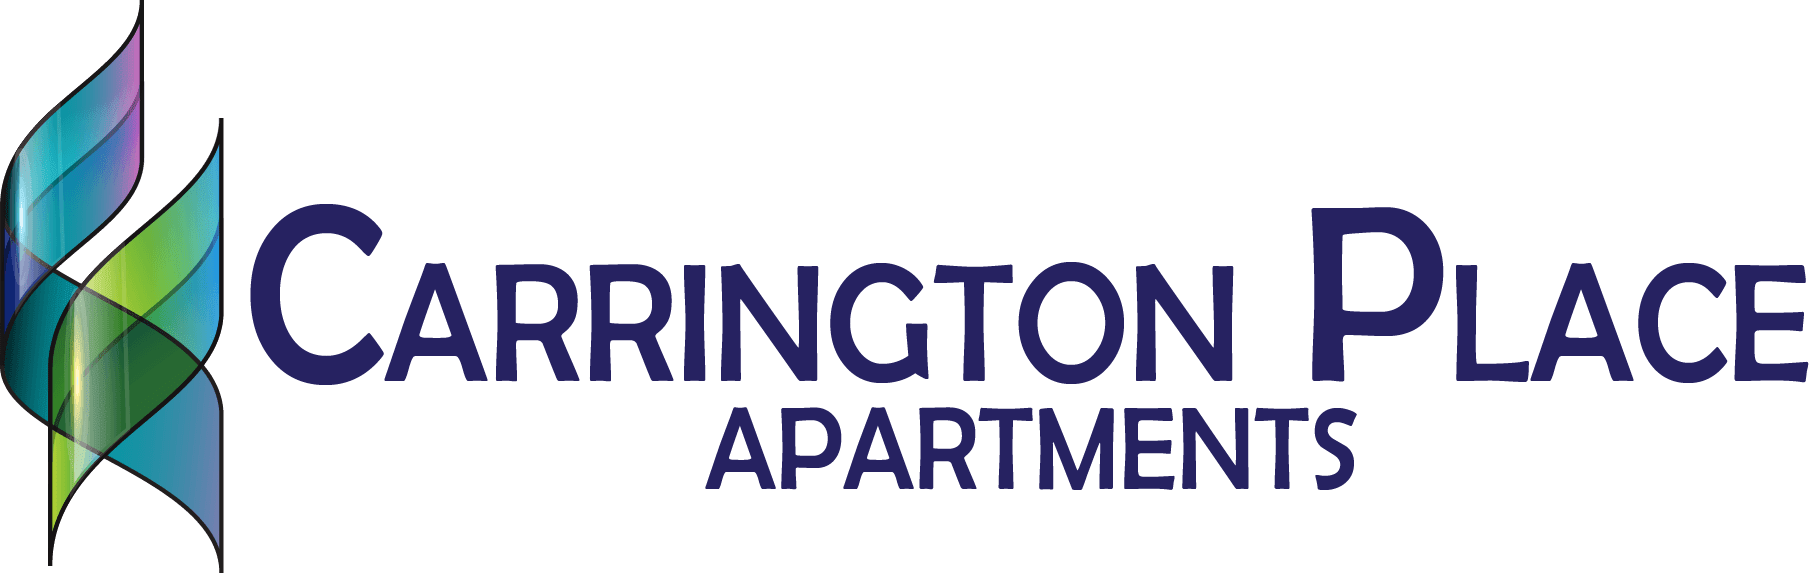 Carrington Place Apartments